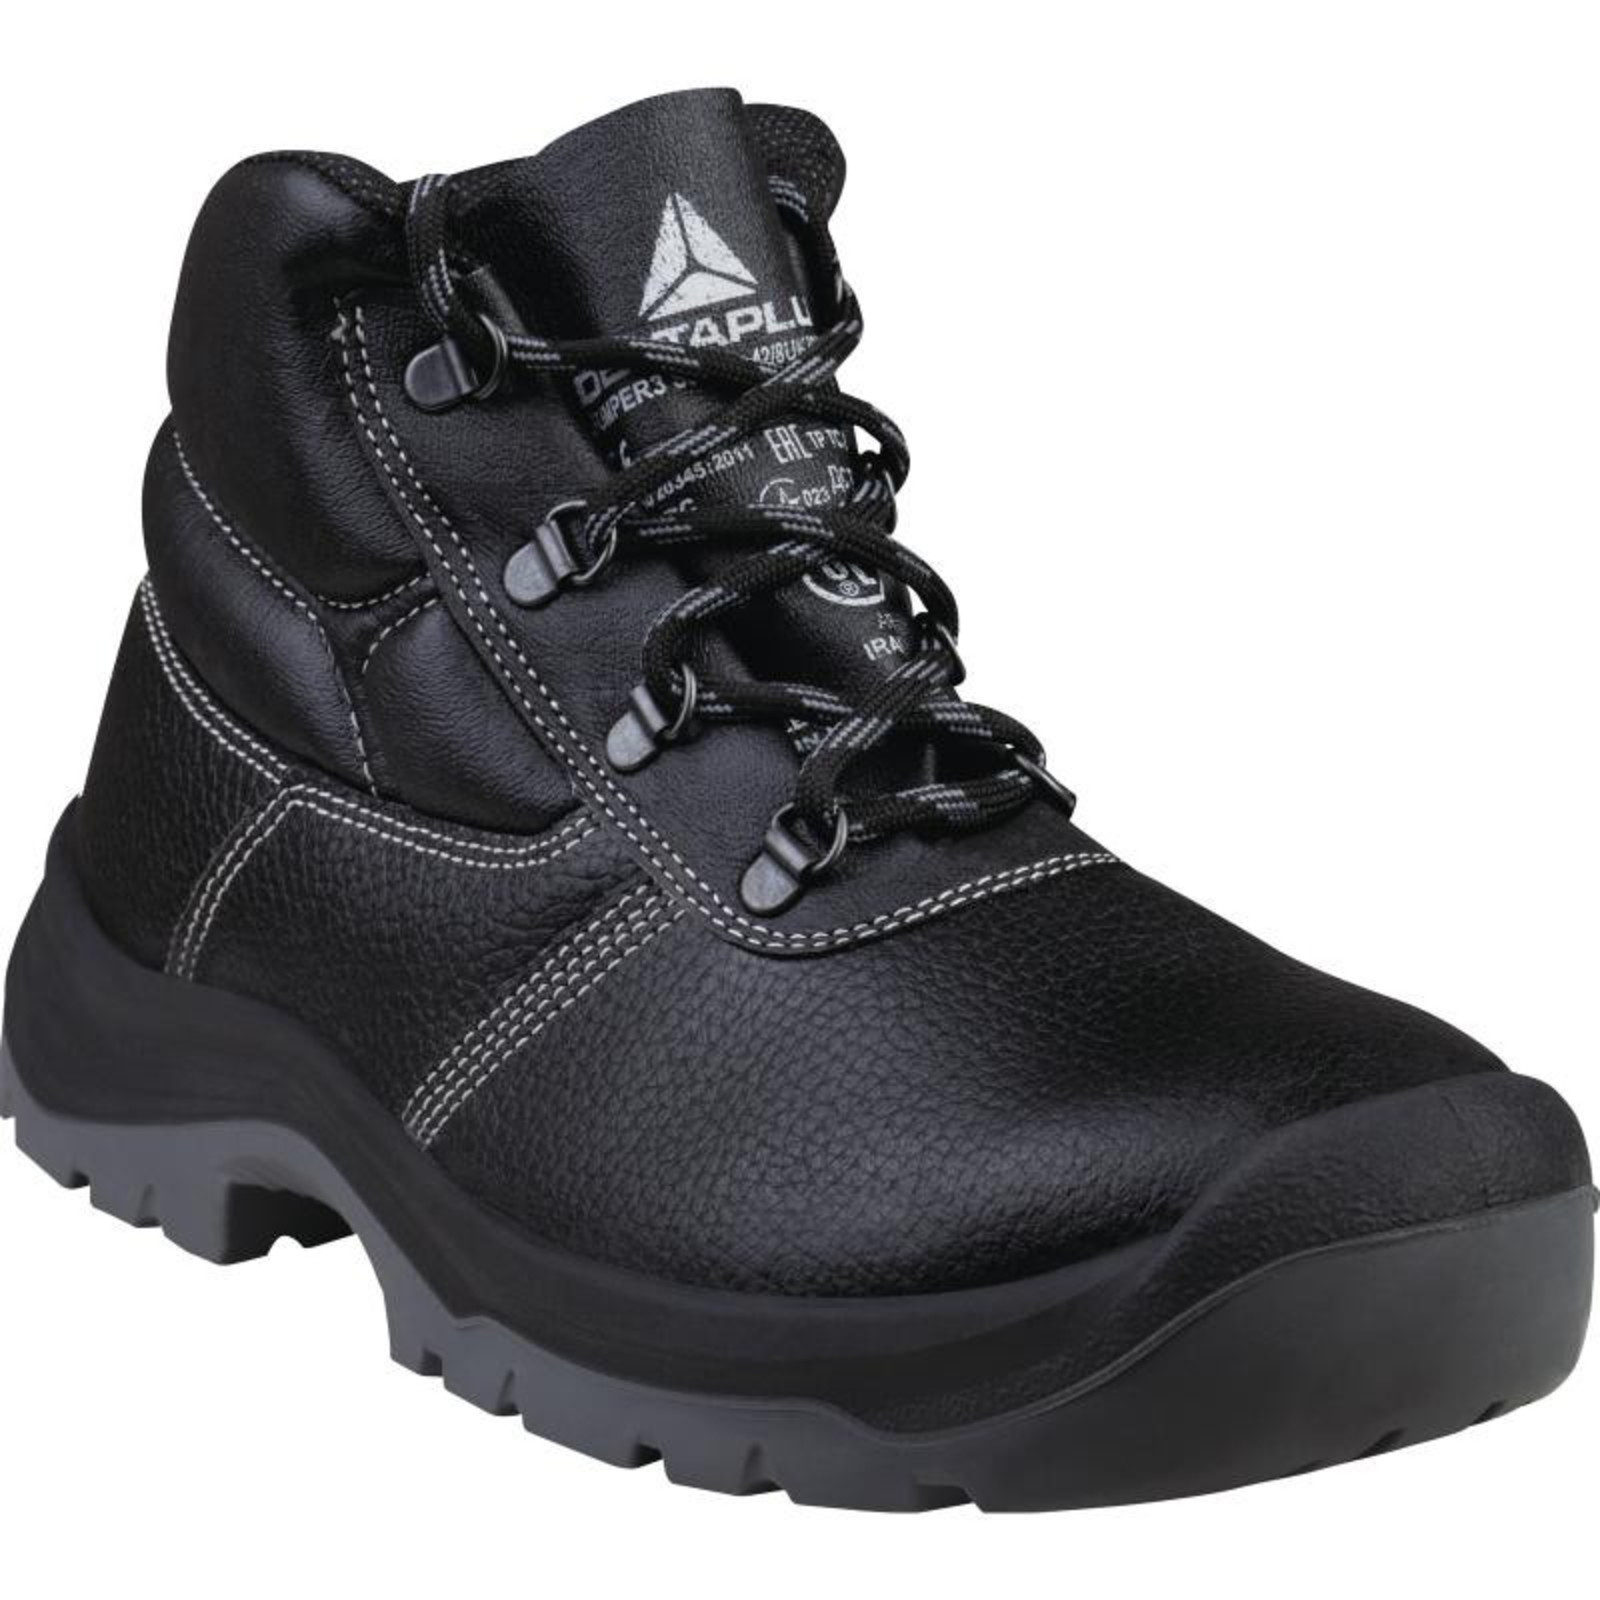 Členková bezpečnostná obuv Delta Plus Jumper3 S3 SRC - veľkosť: 40, farba: čierna